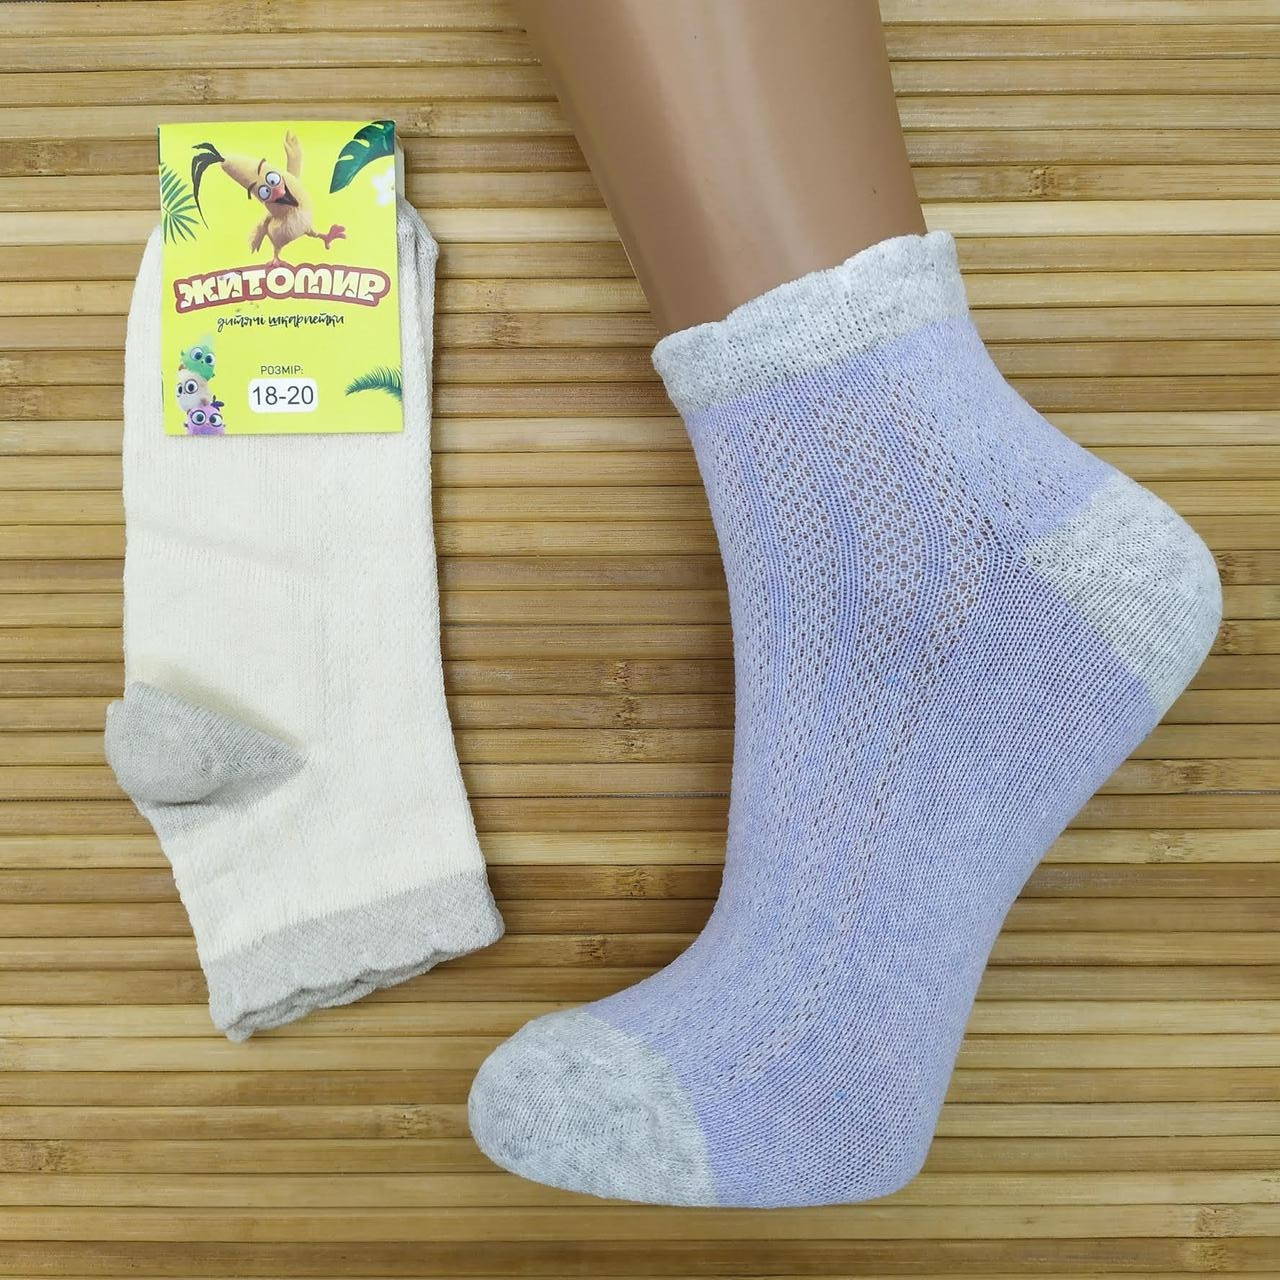 Шкарпетки дитячі підліткові з сіткою для дівчинки, ЖИРОМИР, 18-20 р), асорті,20015763